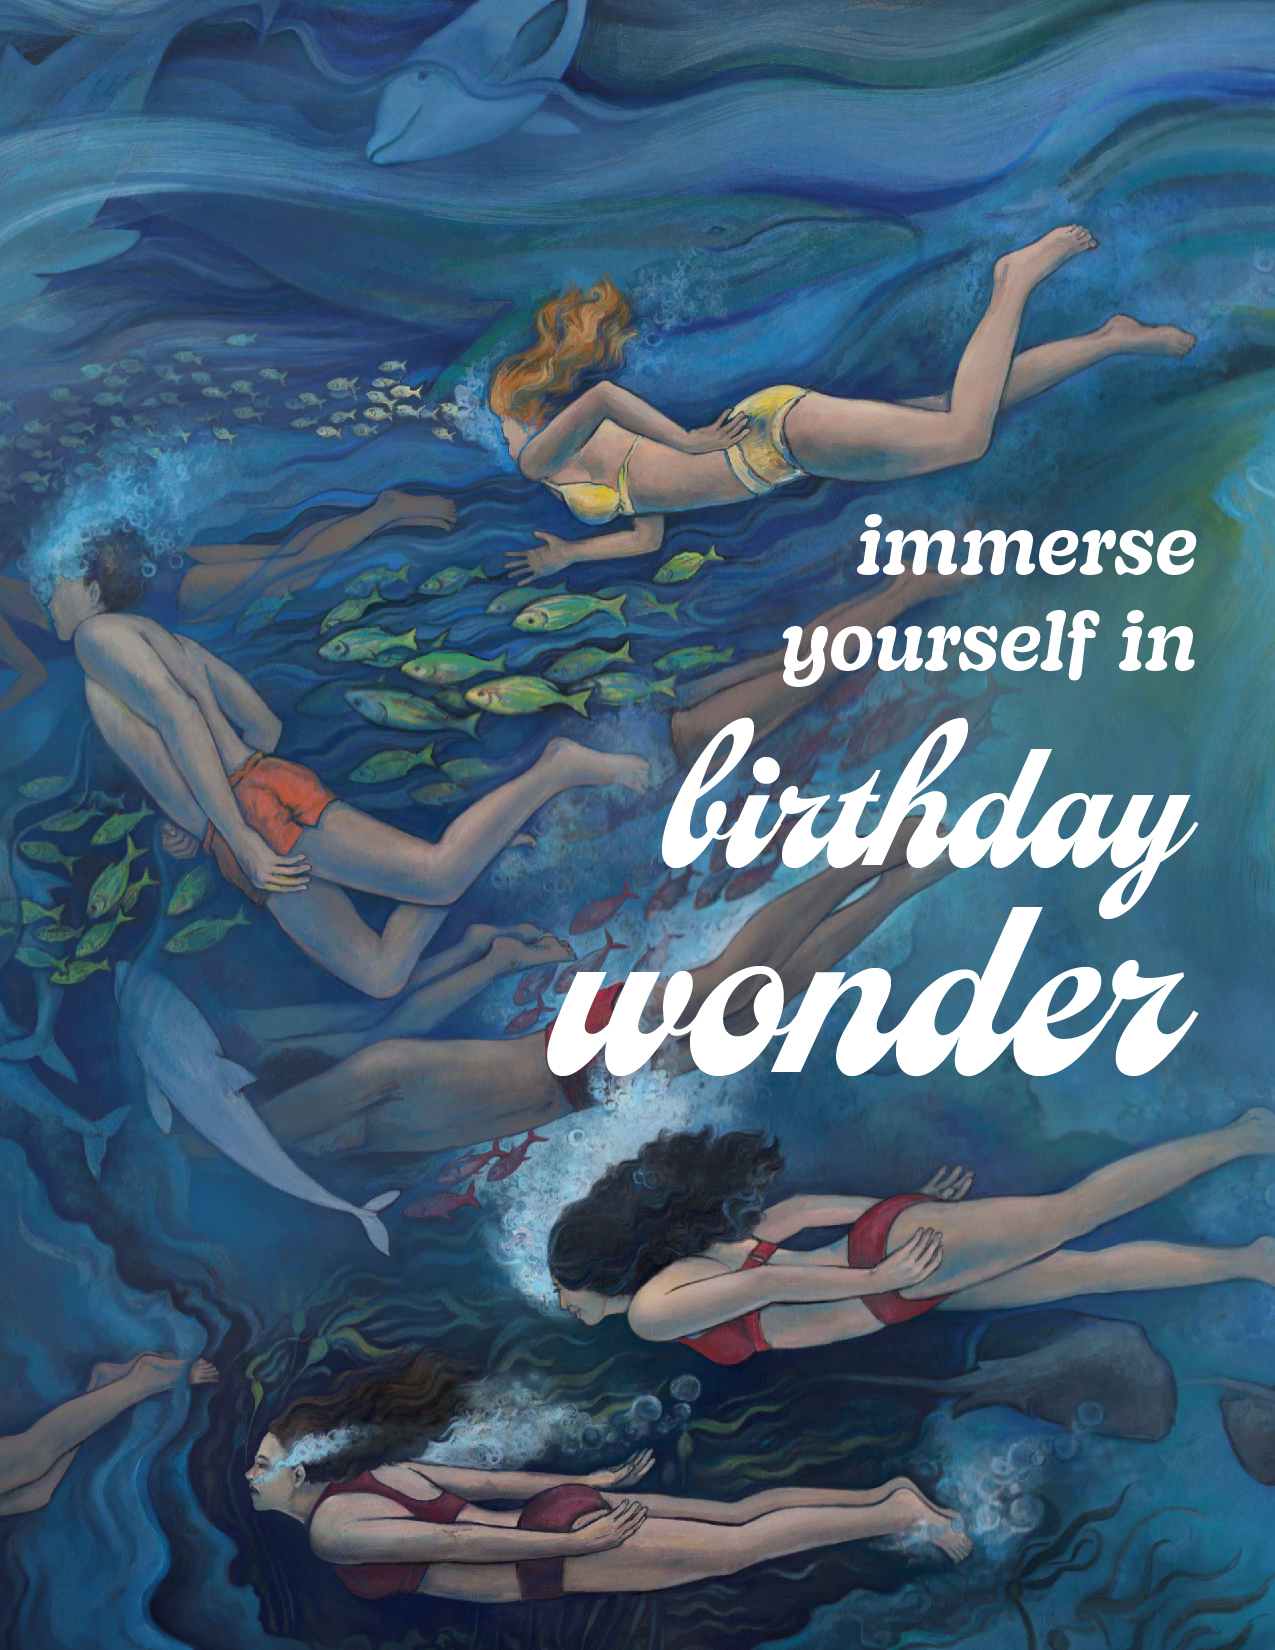 Undersea Birthday Card